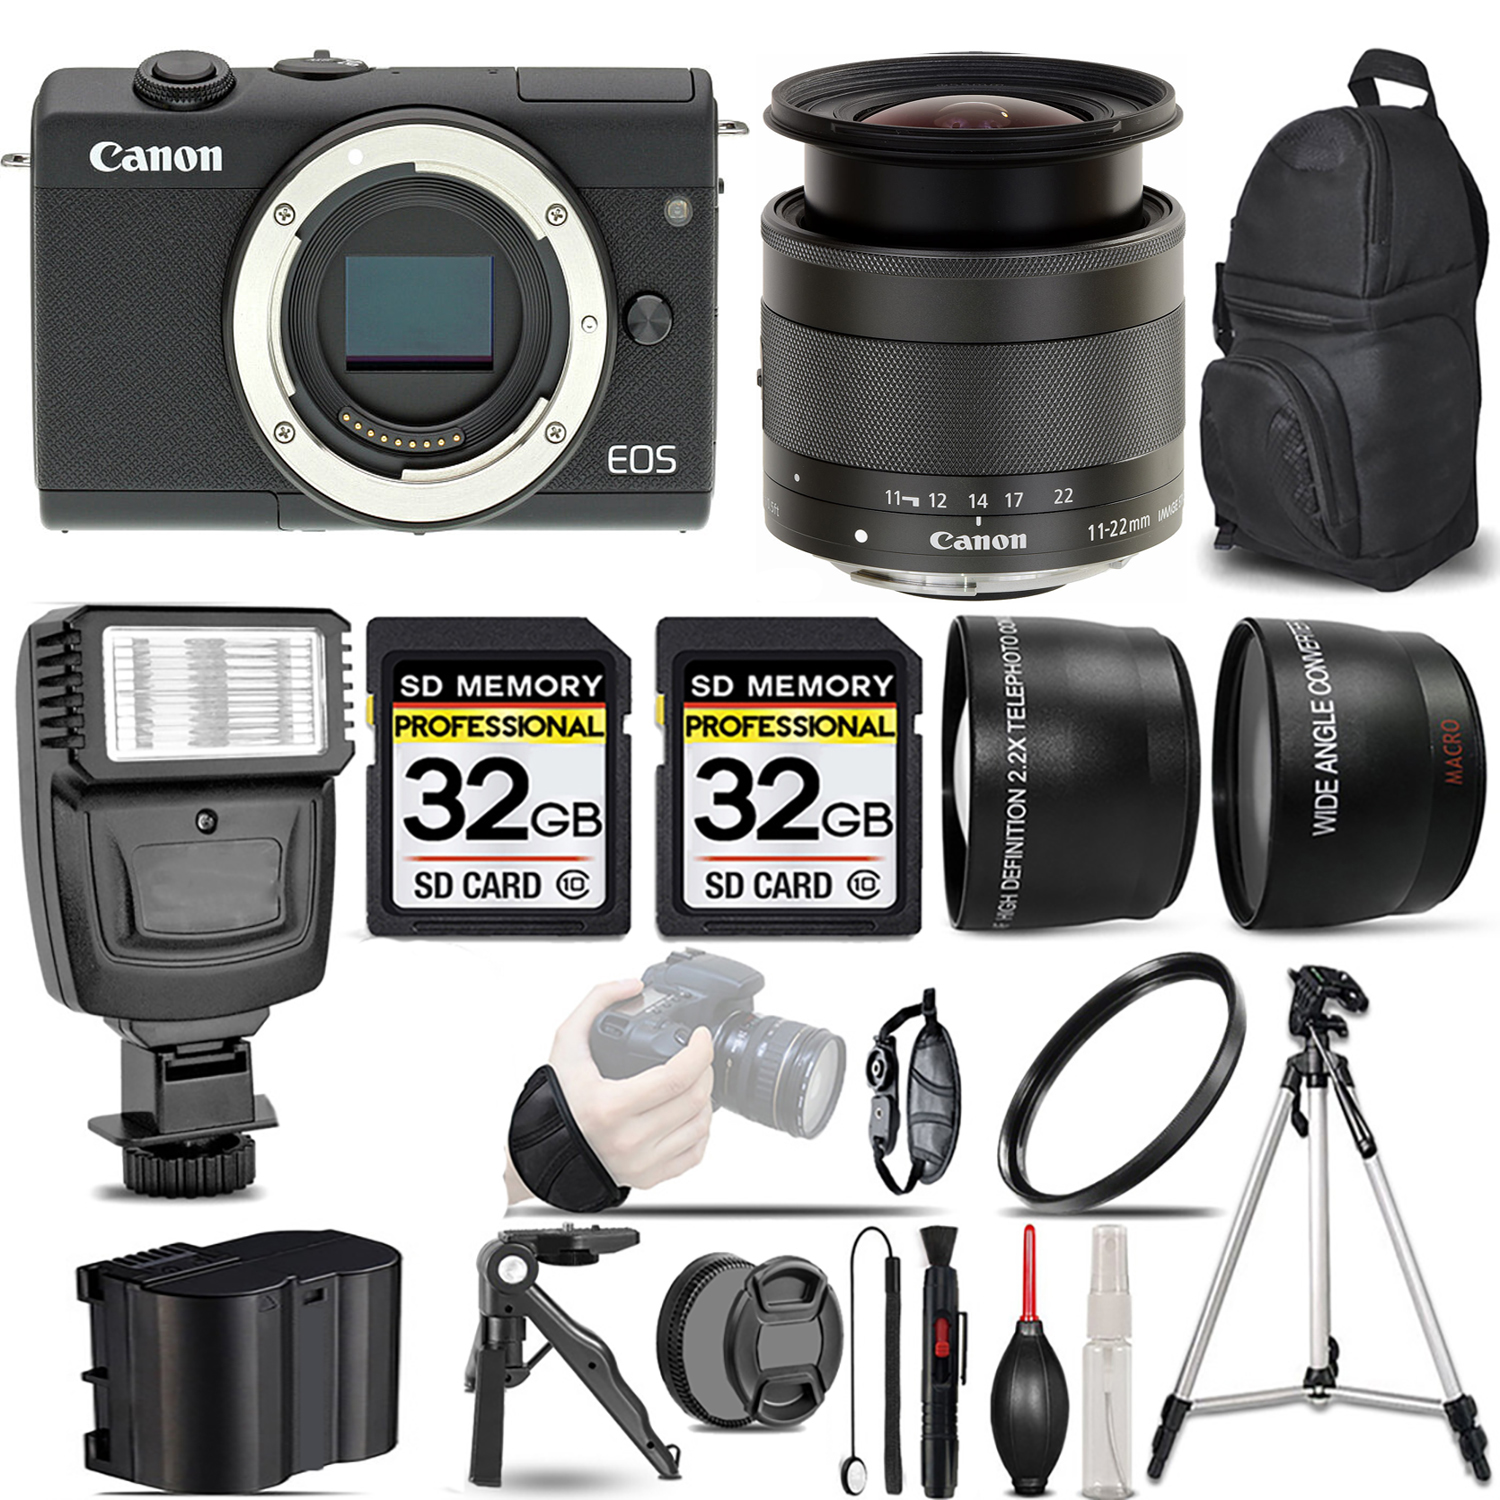 EOS M200 Camera (Black) + 11-22mm f/4-5.6 IS STM Lens + Flash + 64GB - Kit *FREE SHIPPING*